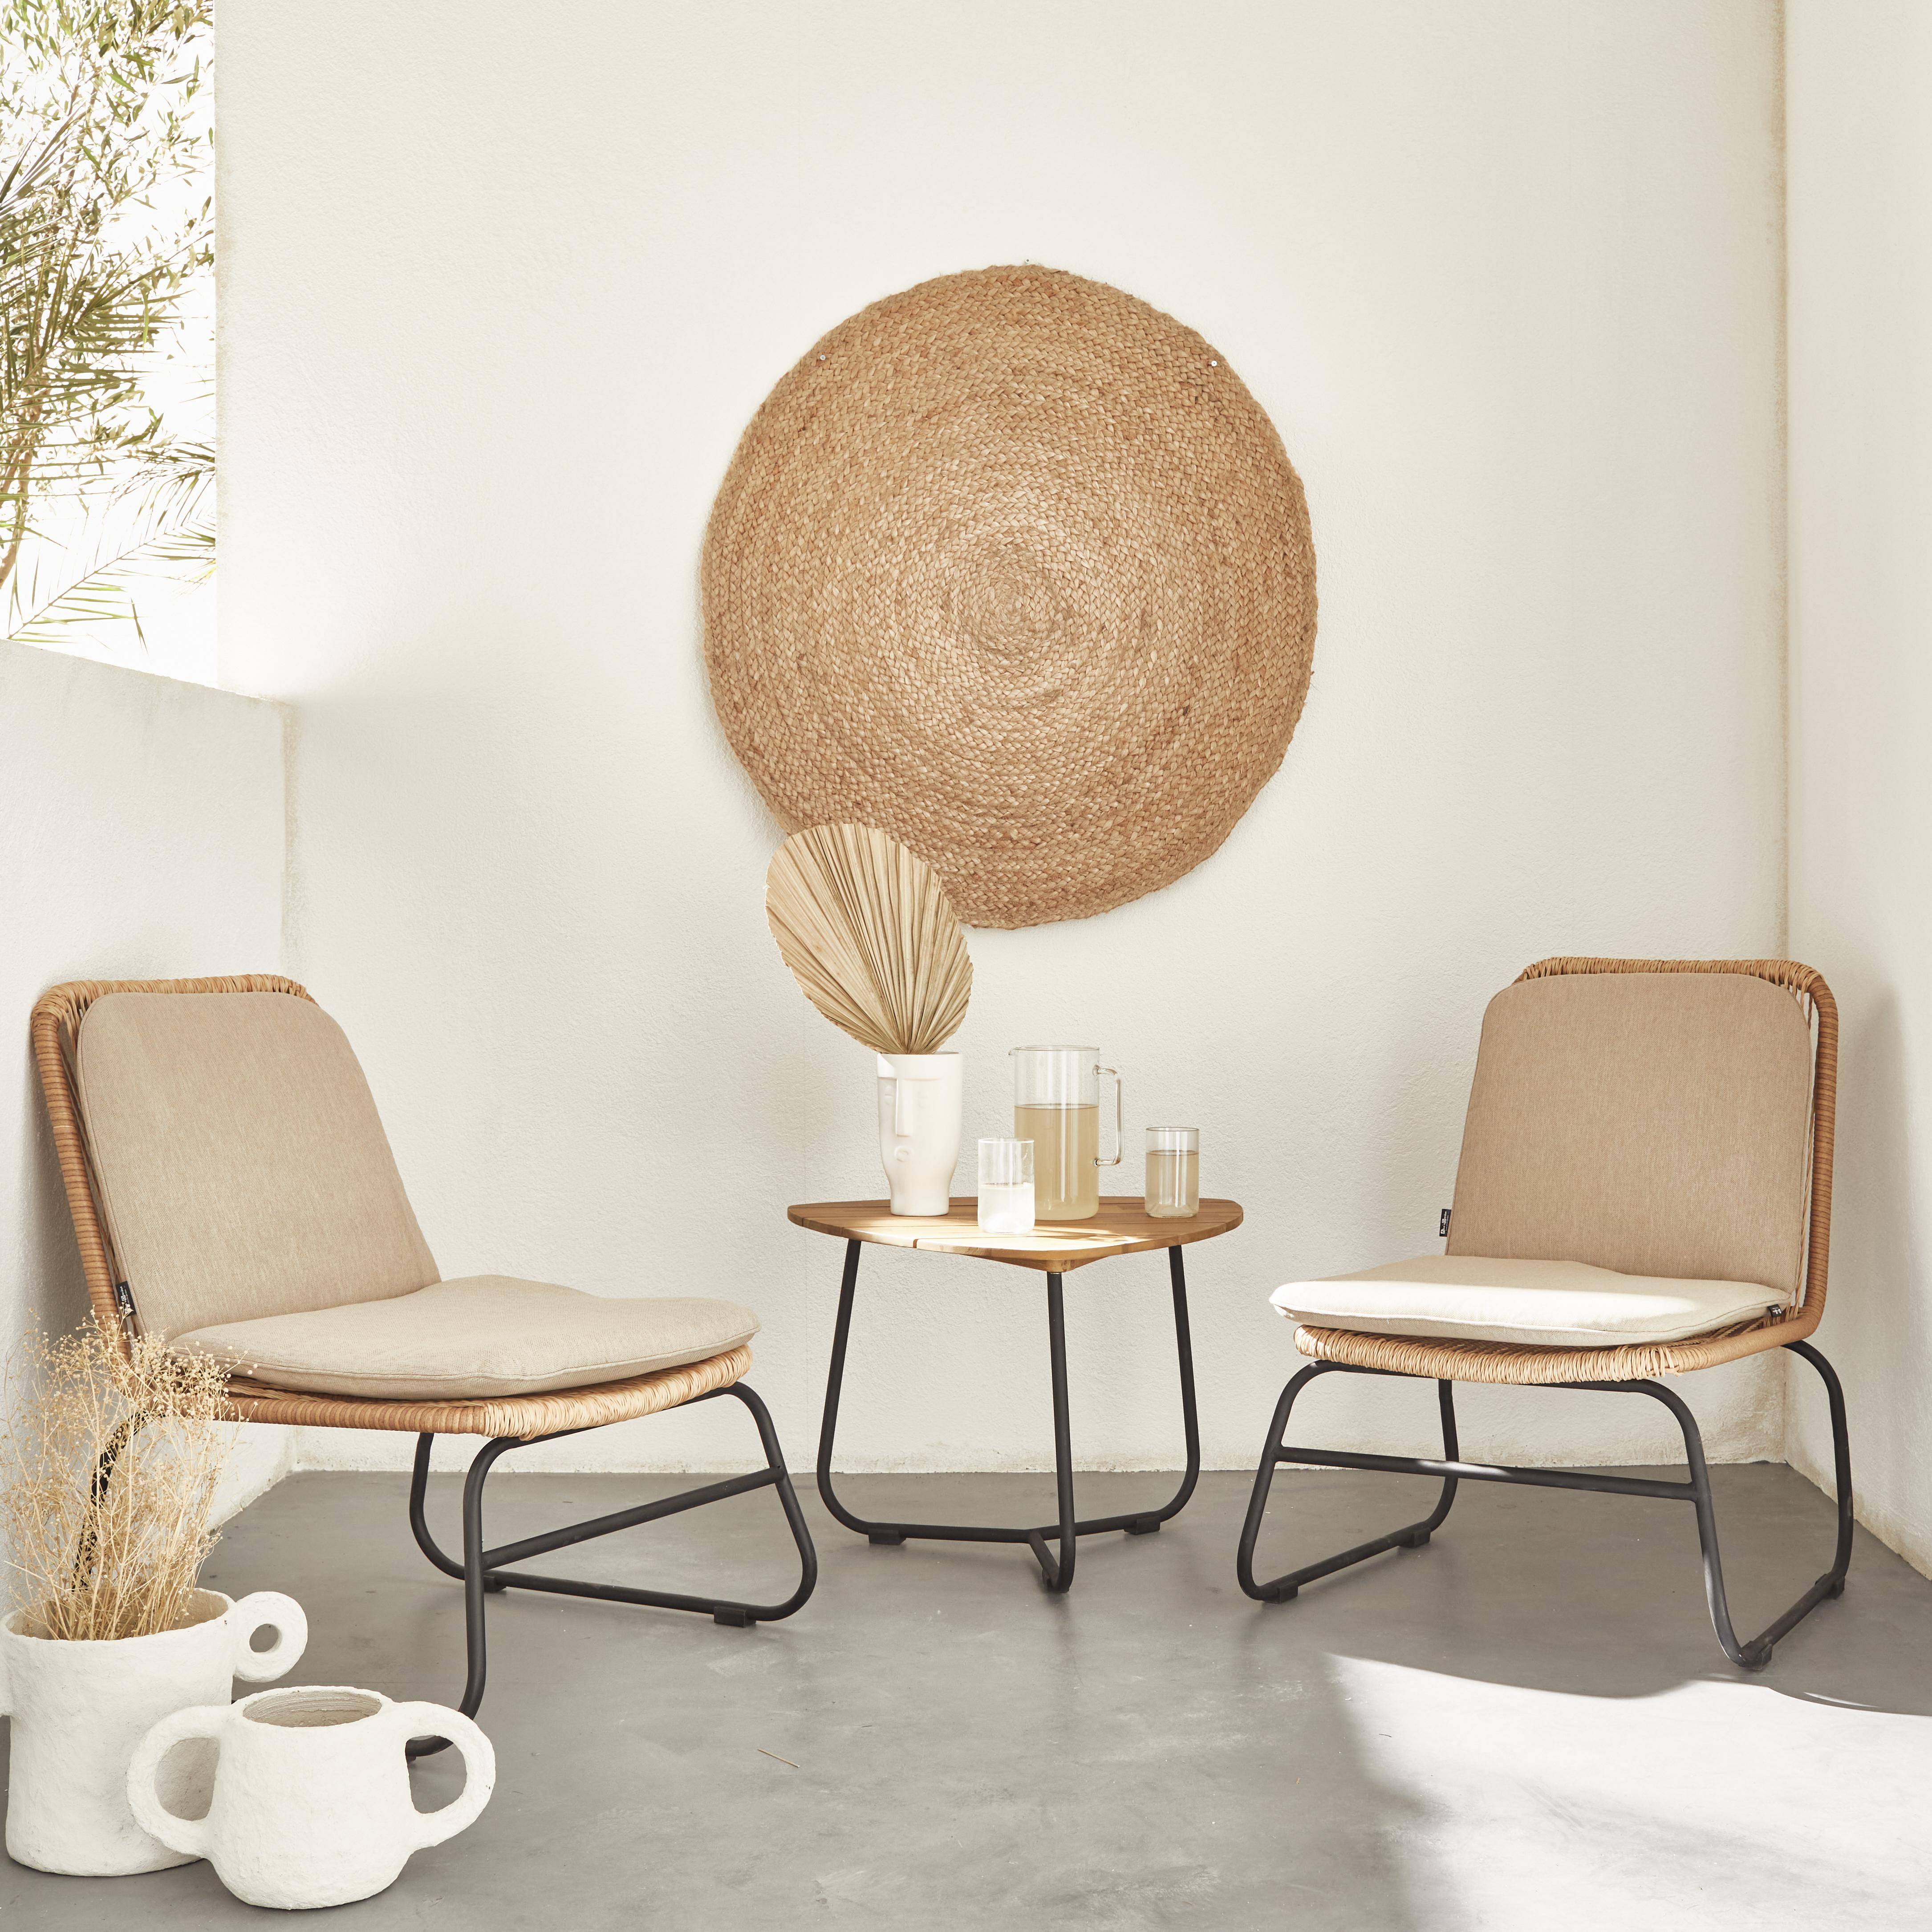 LOMBOK Gartengarnitur 2 Sitze - Set mit 2 Sesseln mit Beistelltisch, Rattan-Effekt aus Kunststoffrattan und beigefarbenen Kissen Photo1